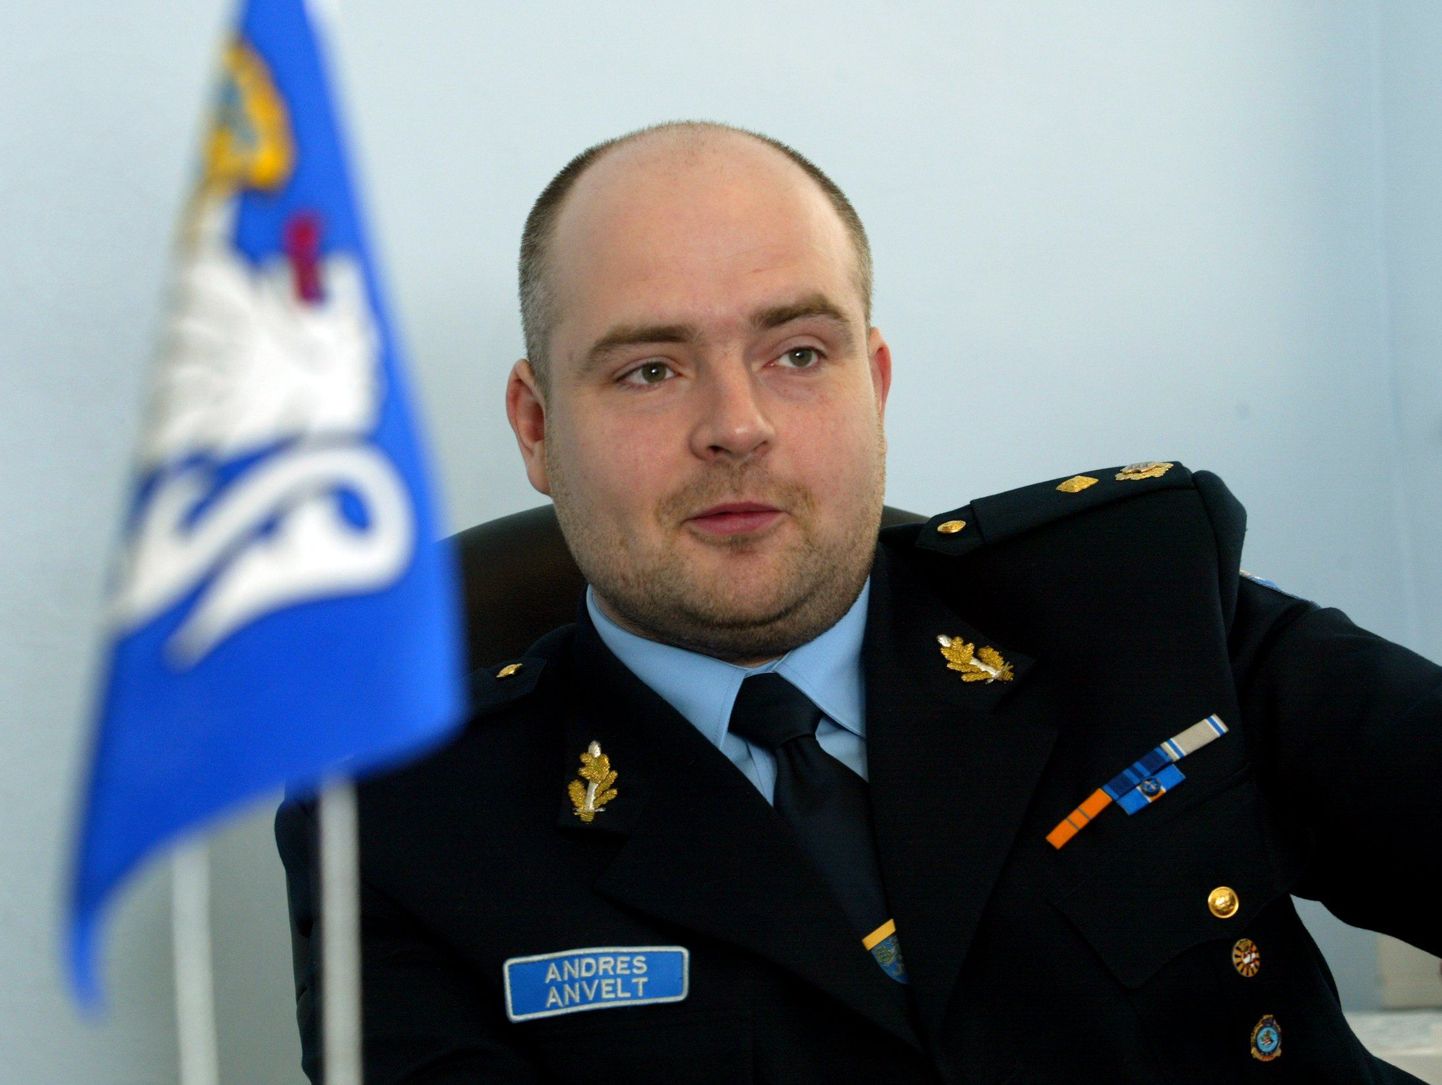 Andres Anvelt sisekaitseakadeemia  politseikolledži direktorina.